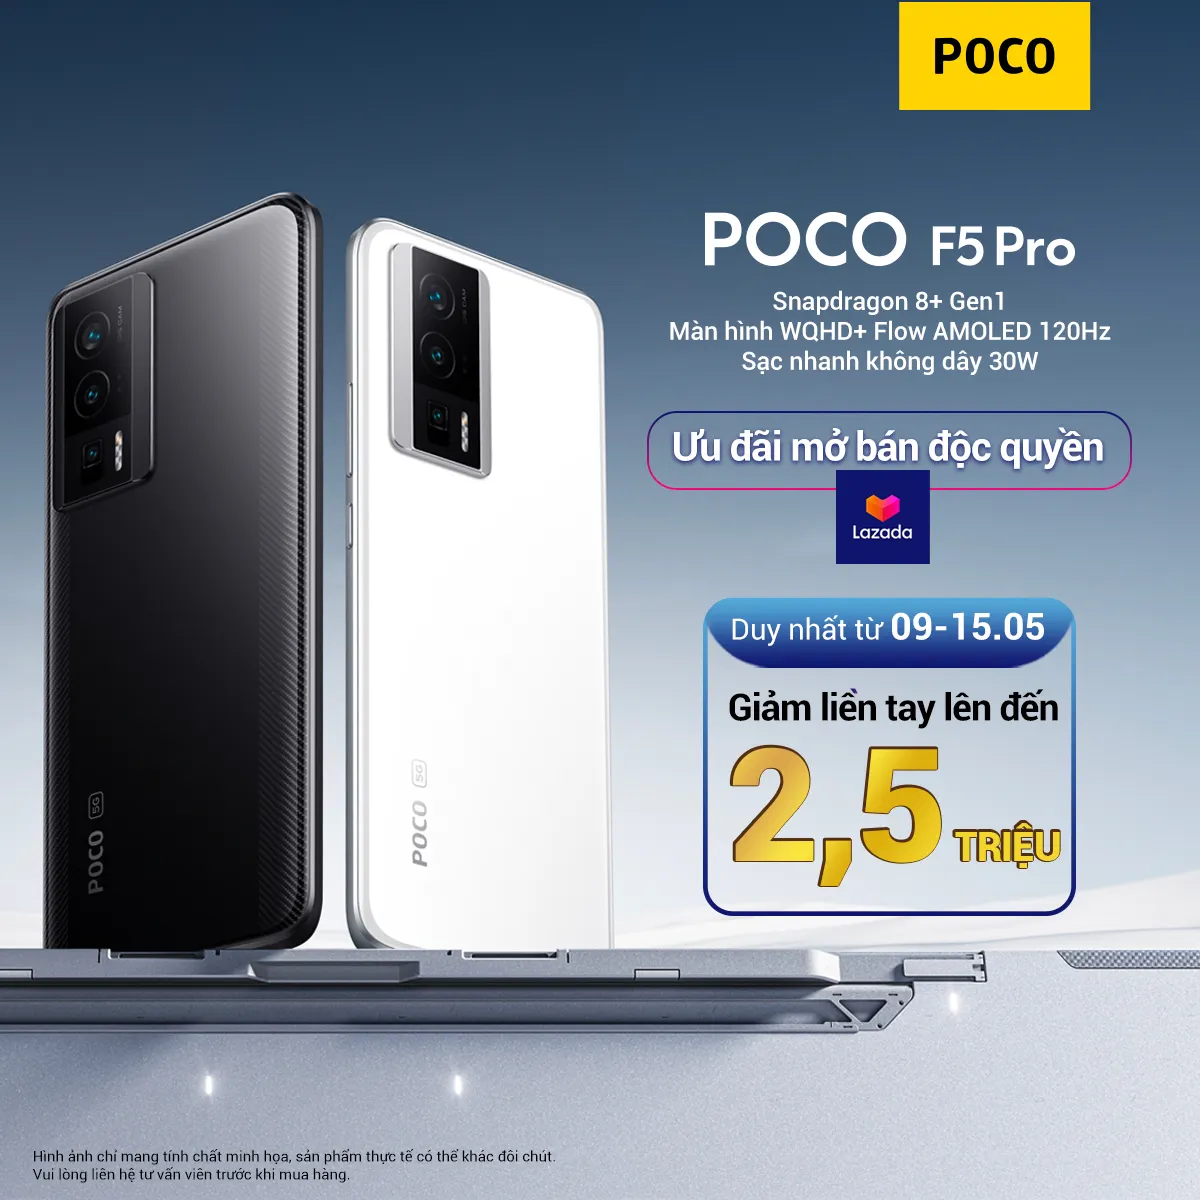 POCO F5 Pro chính thức ra mắt với vi xử lý Snapdragon 8+ Gen 1